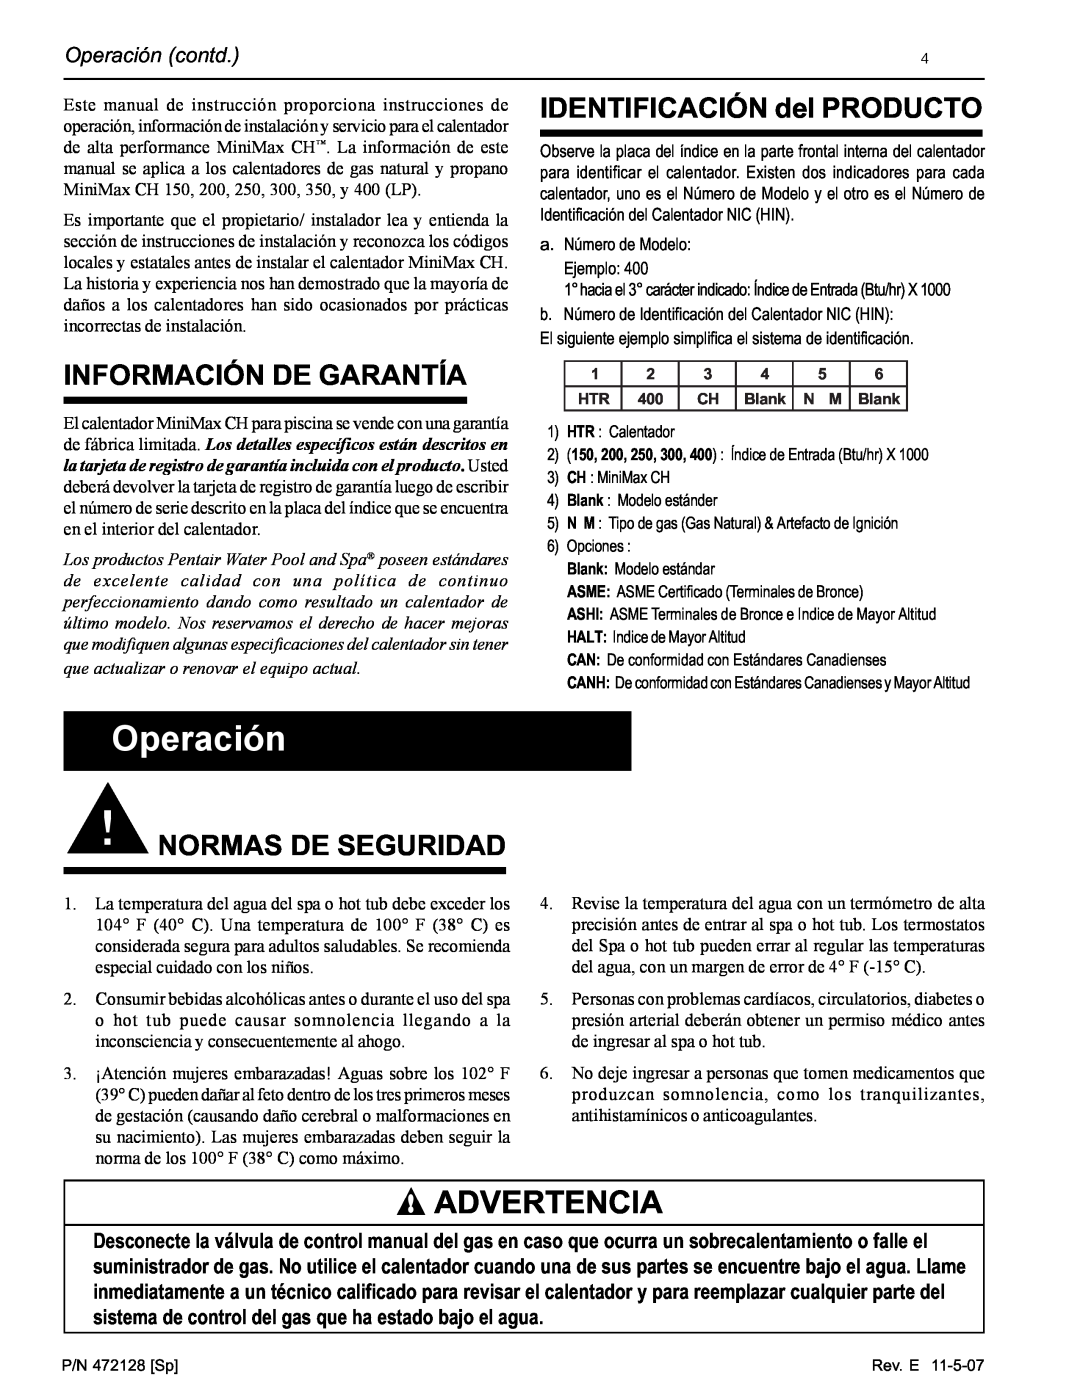 Pentair Hot Tub manual Información De Garantía, IDENTIFICACIÓN del PRODUCTO, Normas De Seguridad, Operación contd 